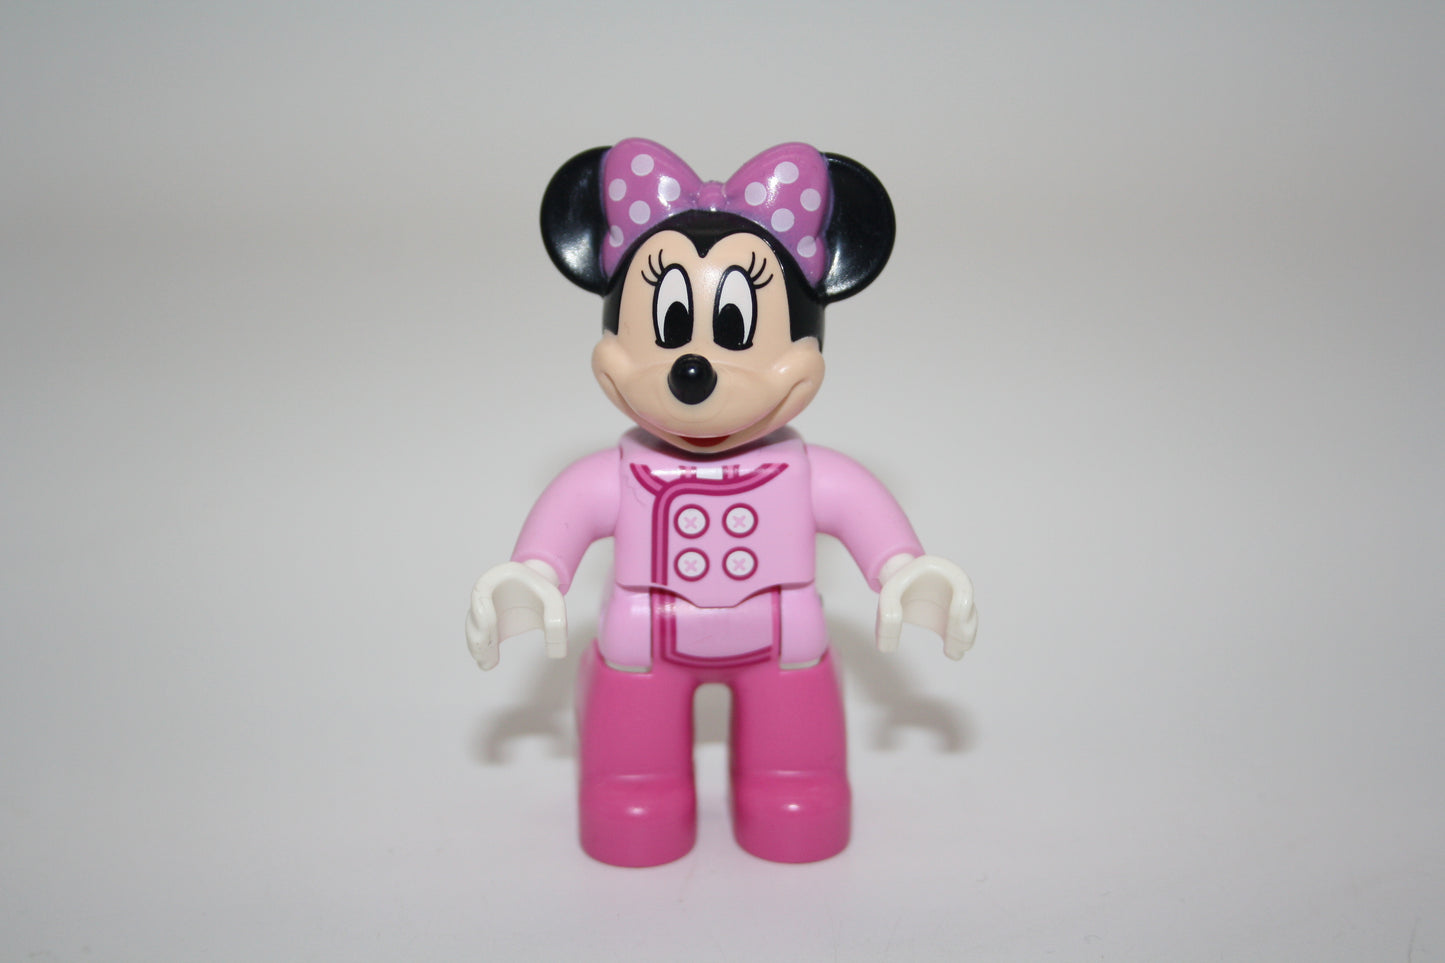 Duplo - Minnie Maus/Minnie Mouse in Rosa Kleidung - Disney Figur - neue Serie